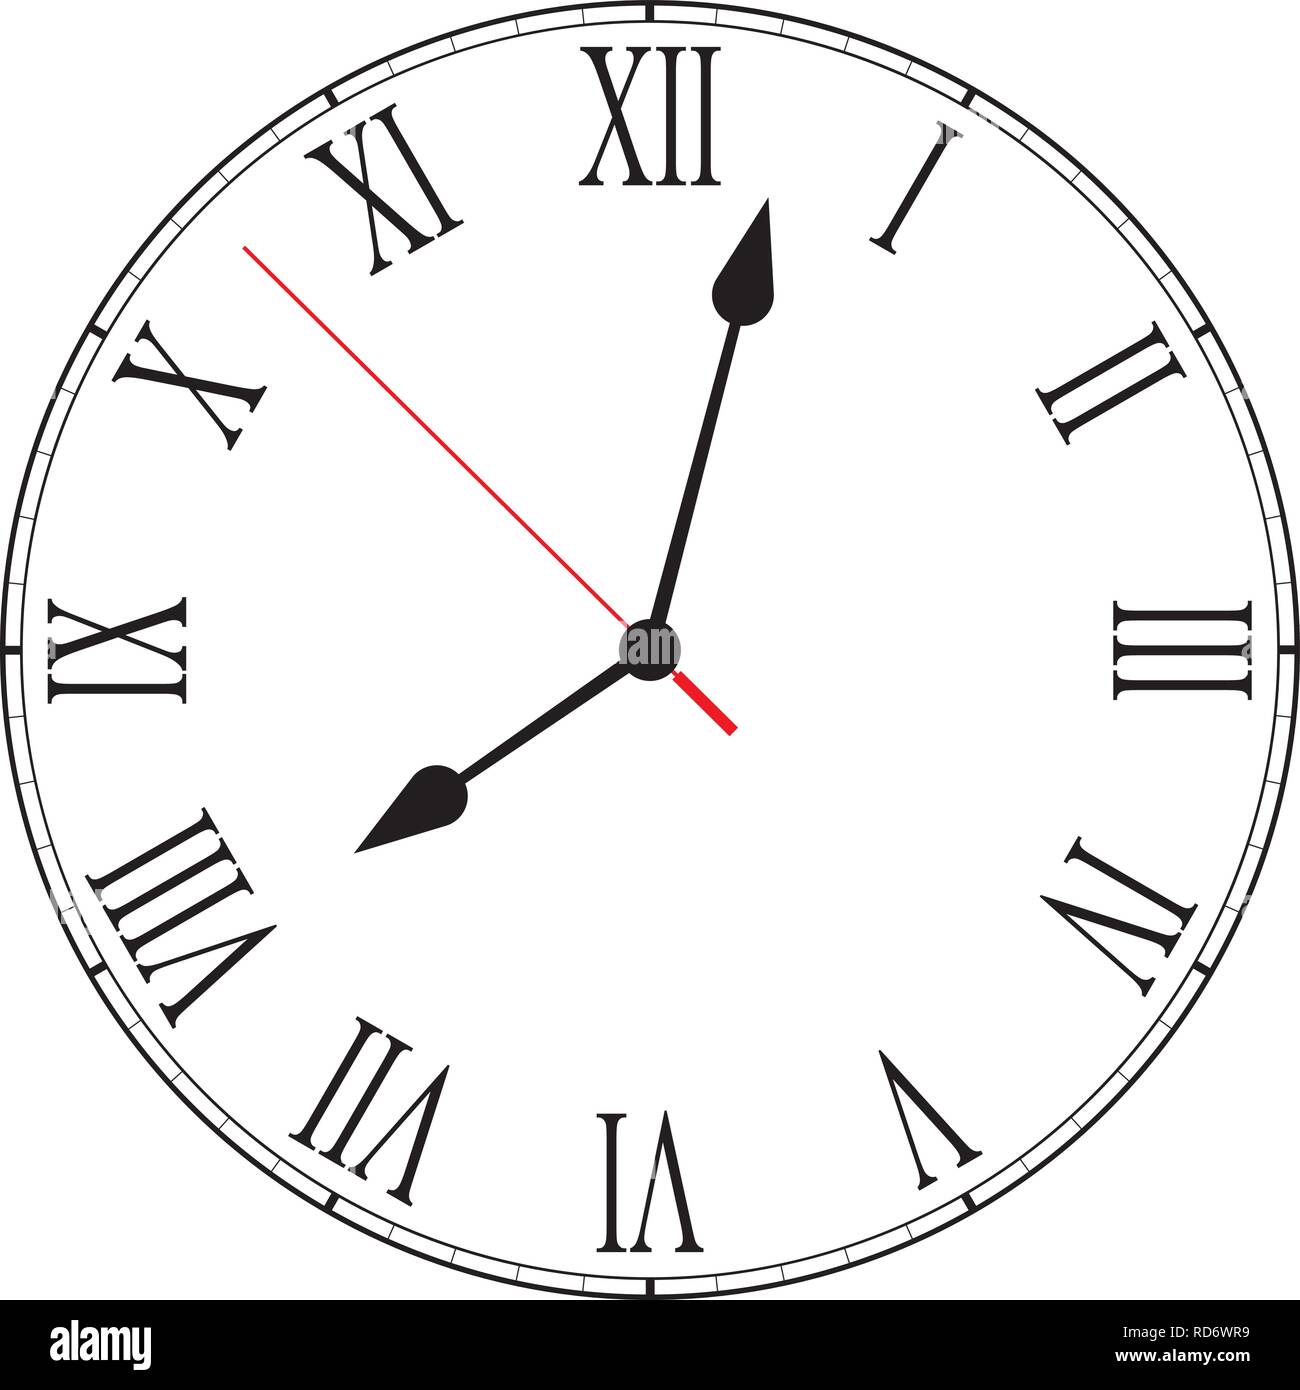 Vector Illustration von leeren Zifferblatt Zifferblatt mit römischen Ziffern, Stunde, Minute und Sekunde die Hände auf weißem Hintergrund Stock Vektor